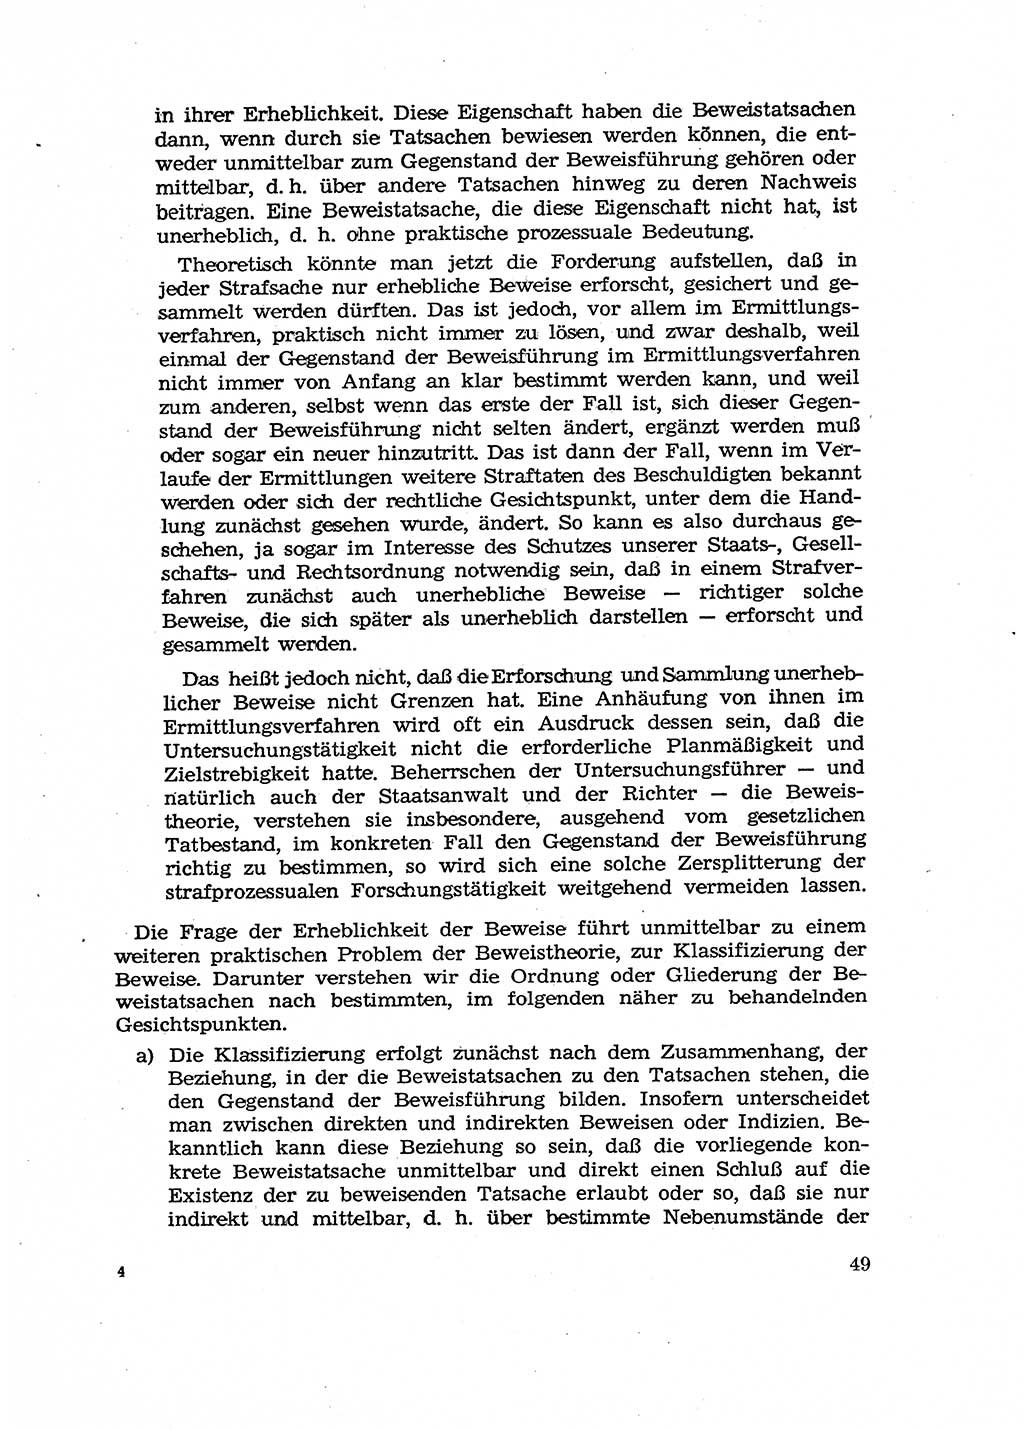 Fragen des Beweisrechts im Strafprozess [Deutsche Demokratische Republik (DDR)] 1956, Seite 49 (Fr. BeweisR. Str.-Proz. DDR 1956, S. 49)